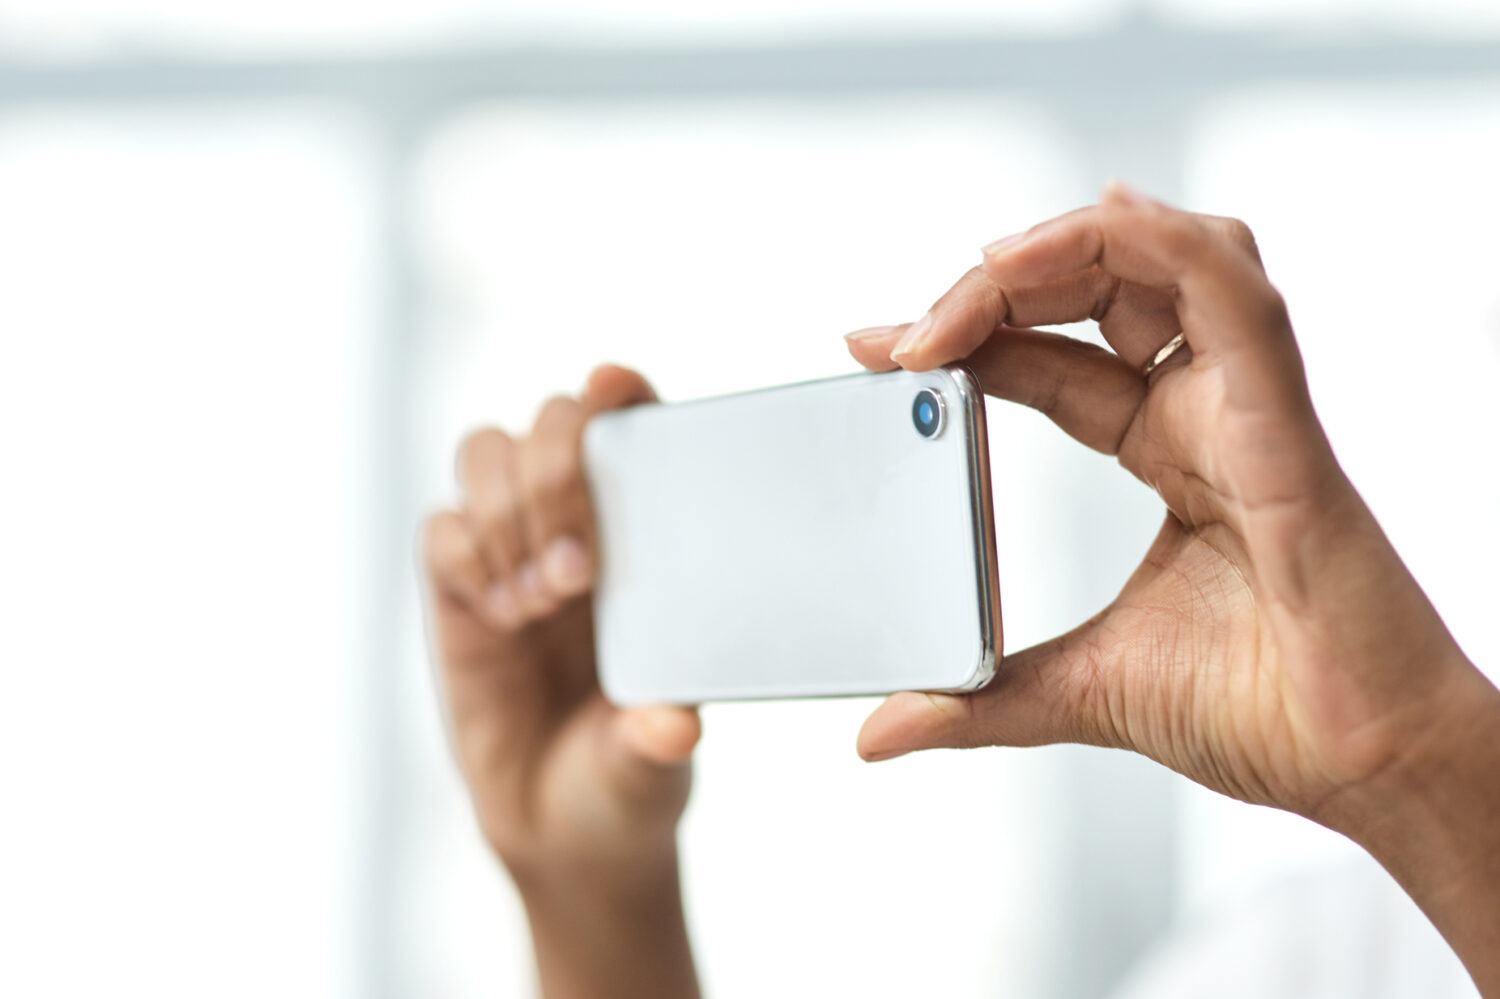 Fotografieren gehört zu den beliebten Funktionen von Smartphones. Foto: PeopleImages/iStock